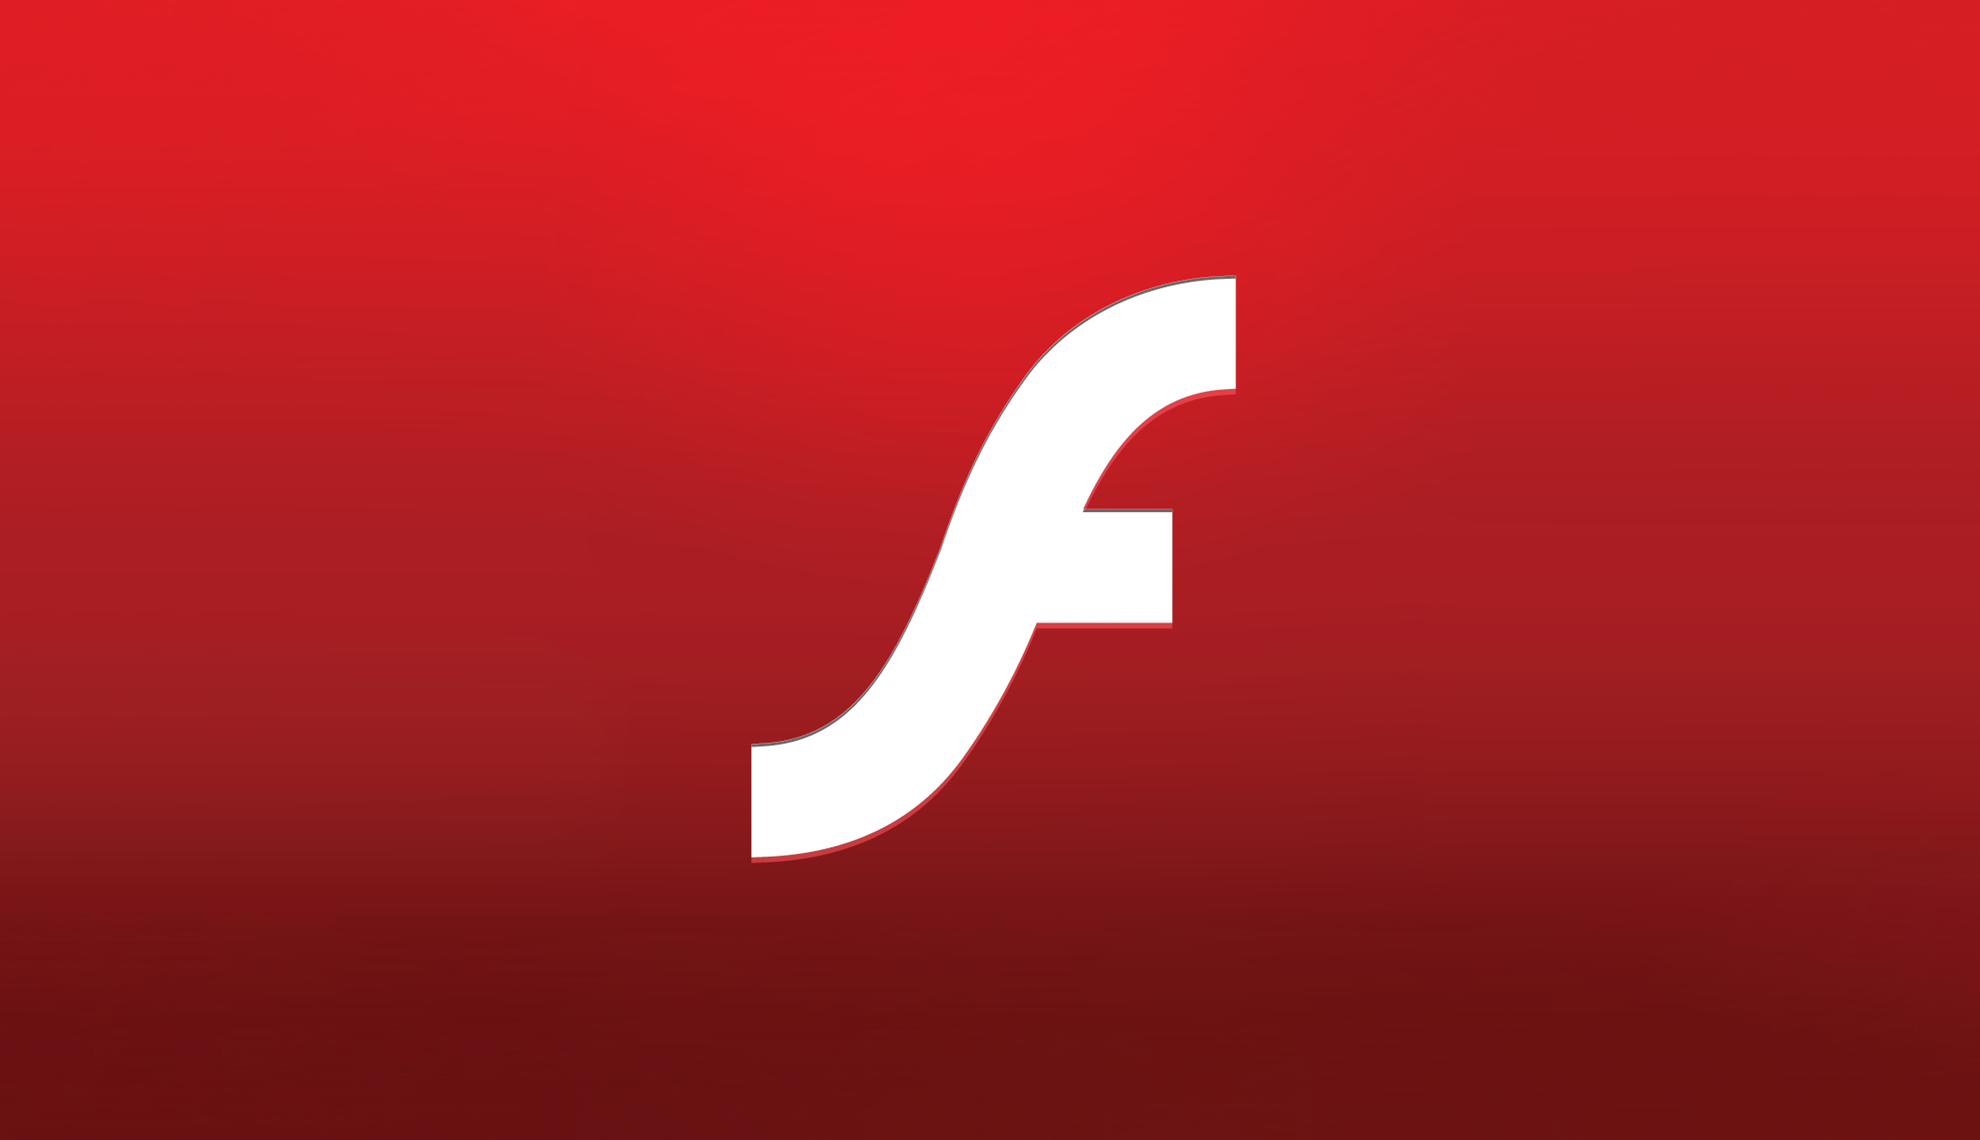 اي فون 28 أبريل 2021 1comment
Apple وقد أنجزت Adobe ذلك: Flash على iOS (لكن ...)